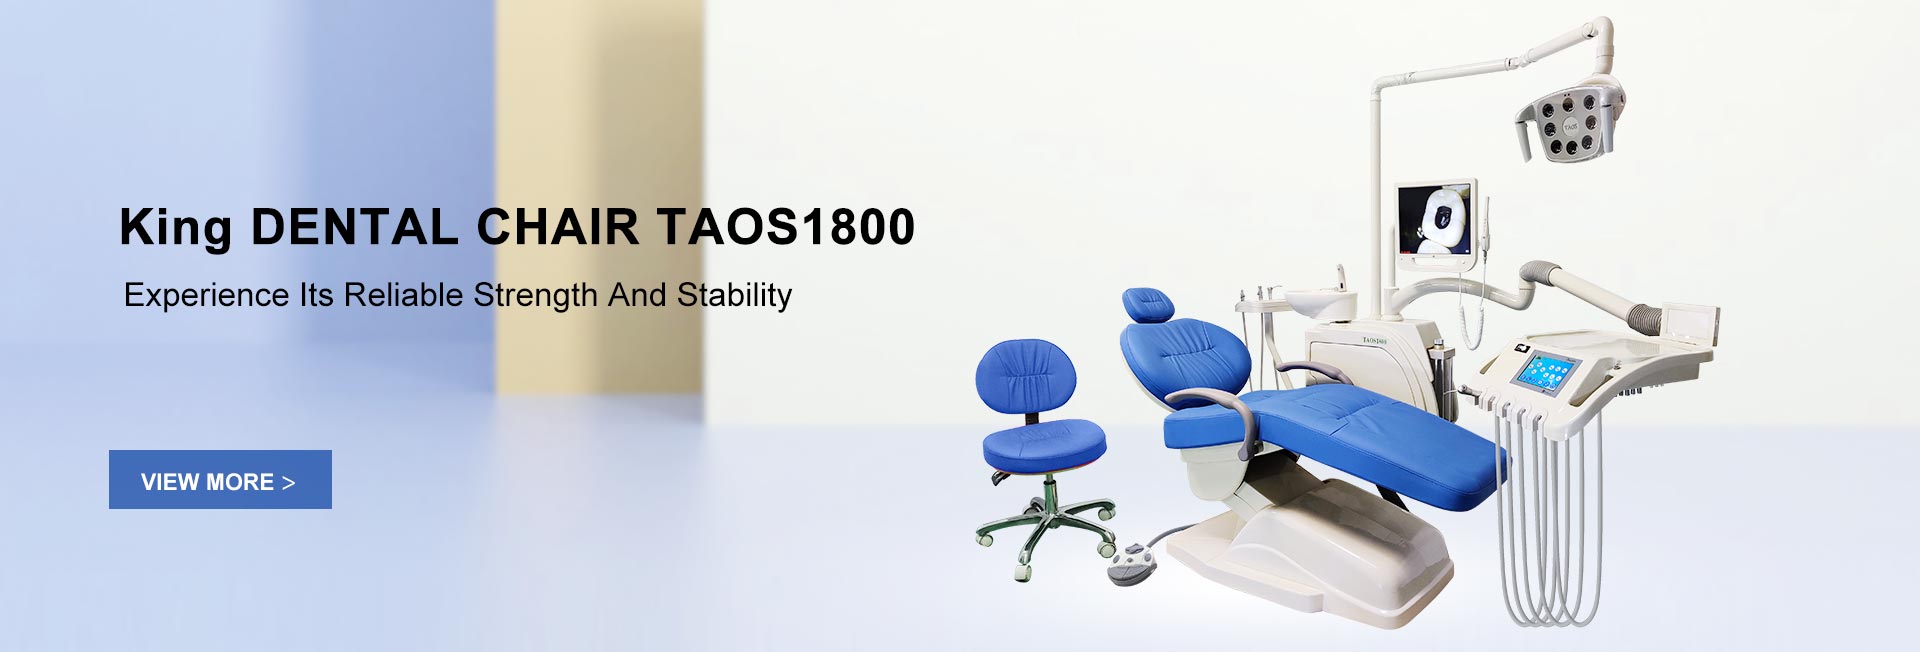 King Dental Chair TAOS1800